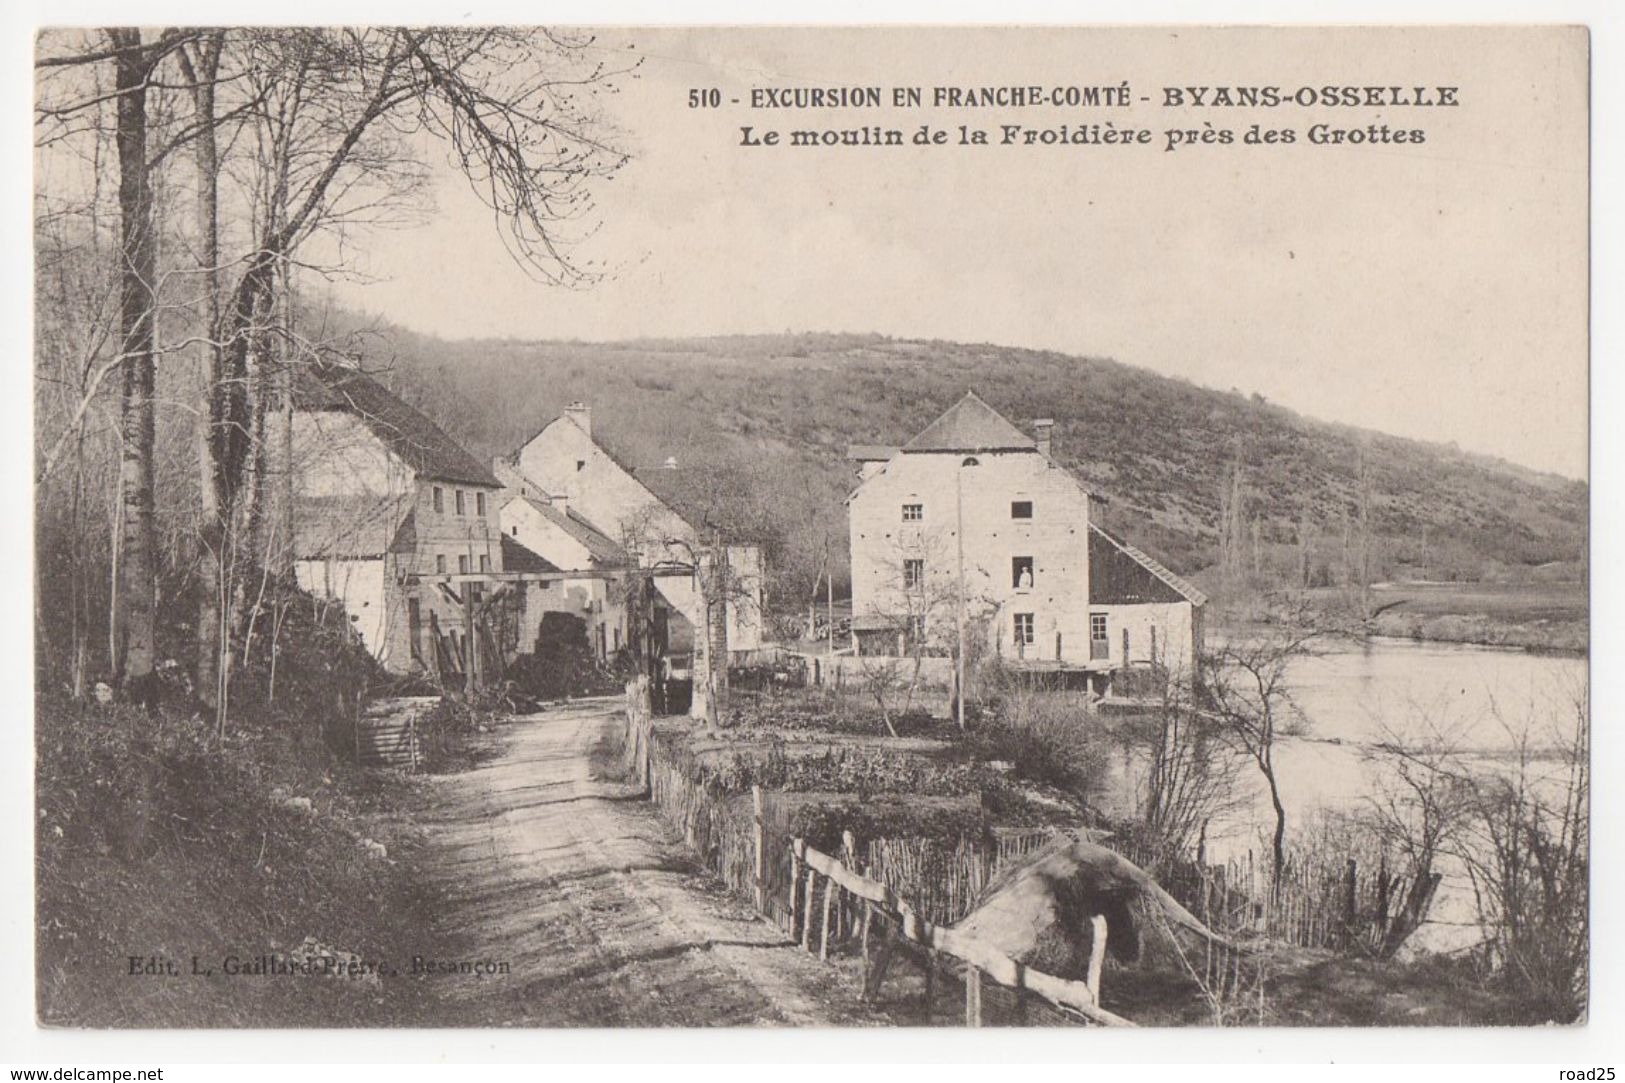 ( 25 ) Lot de 95 cartes postales anciennes du département du Doubs